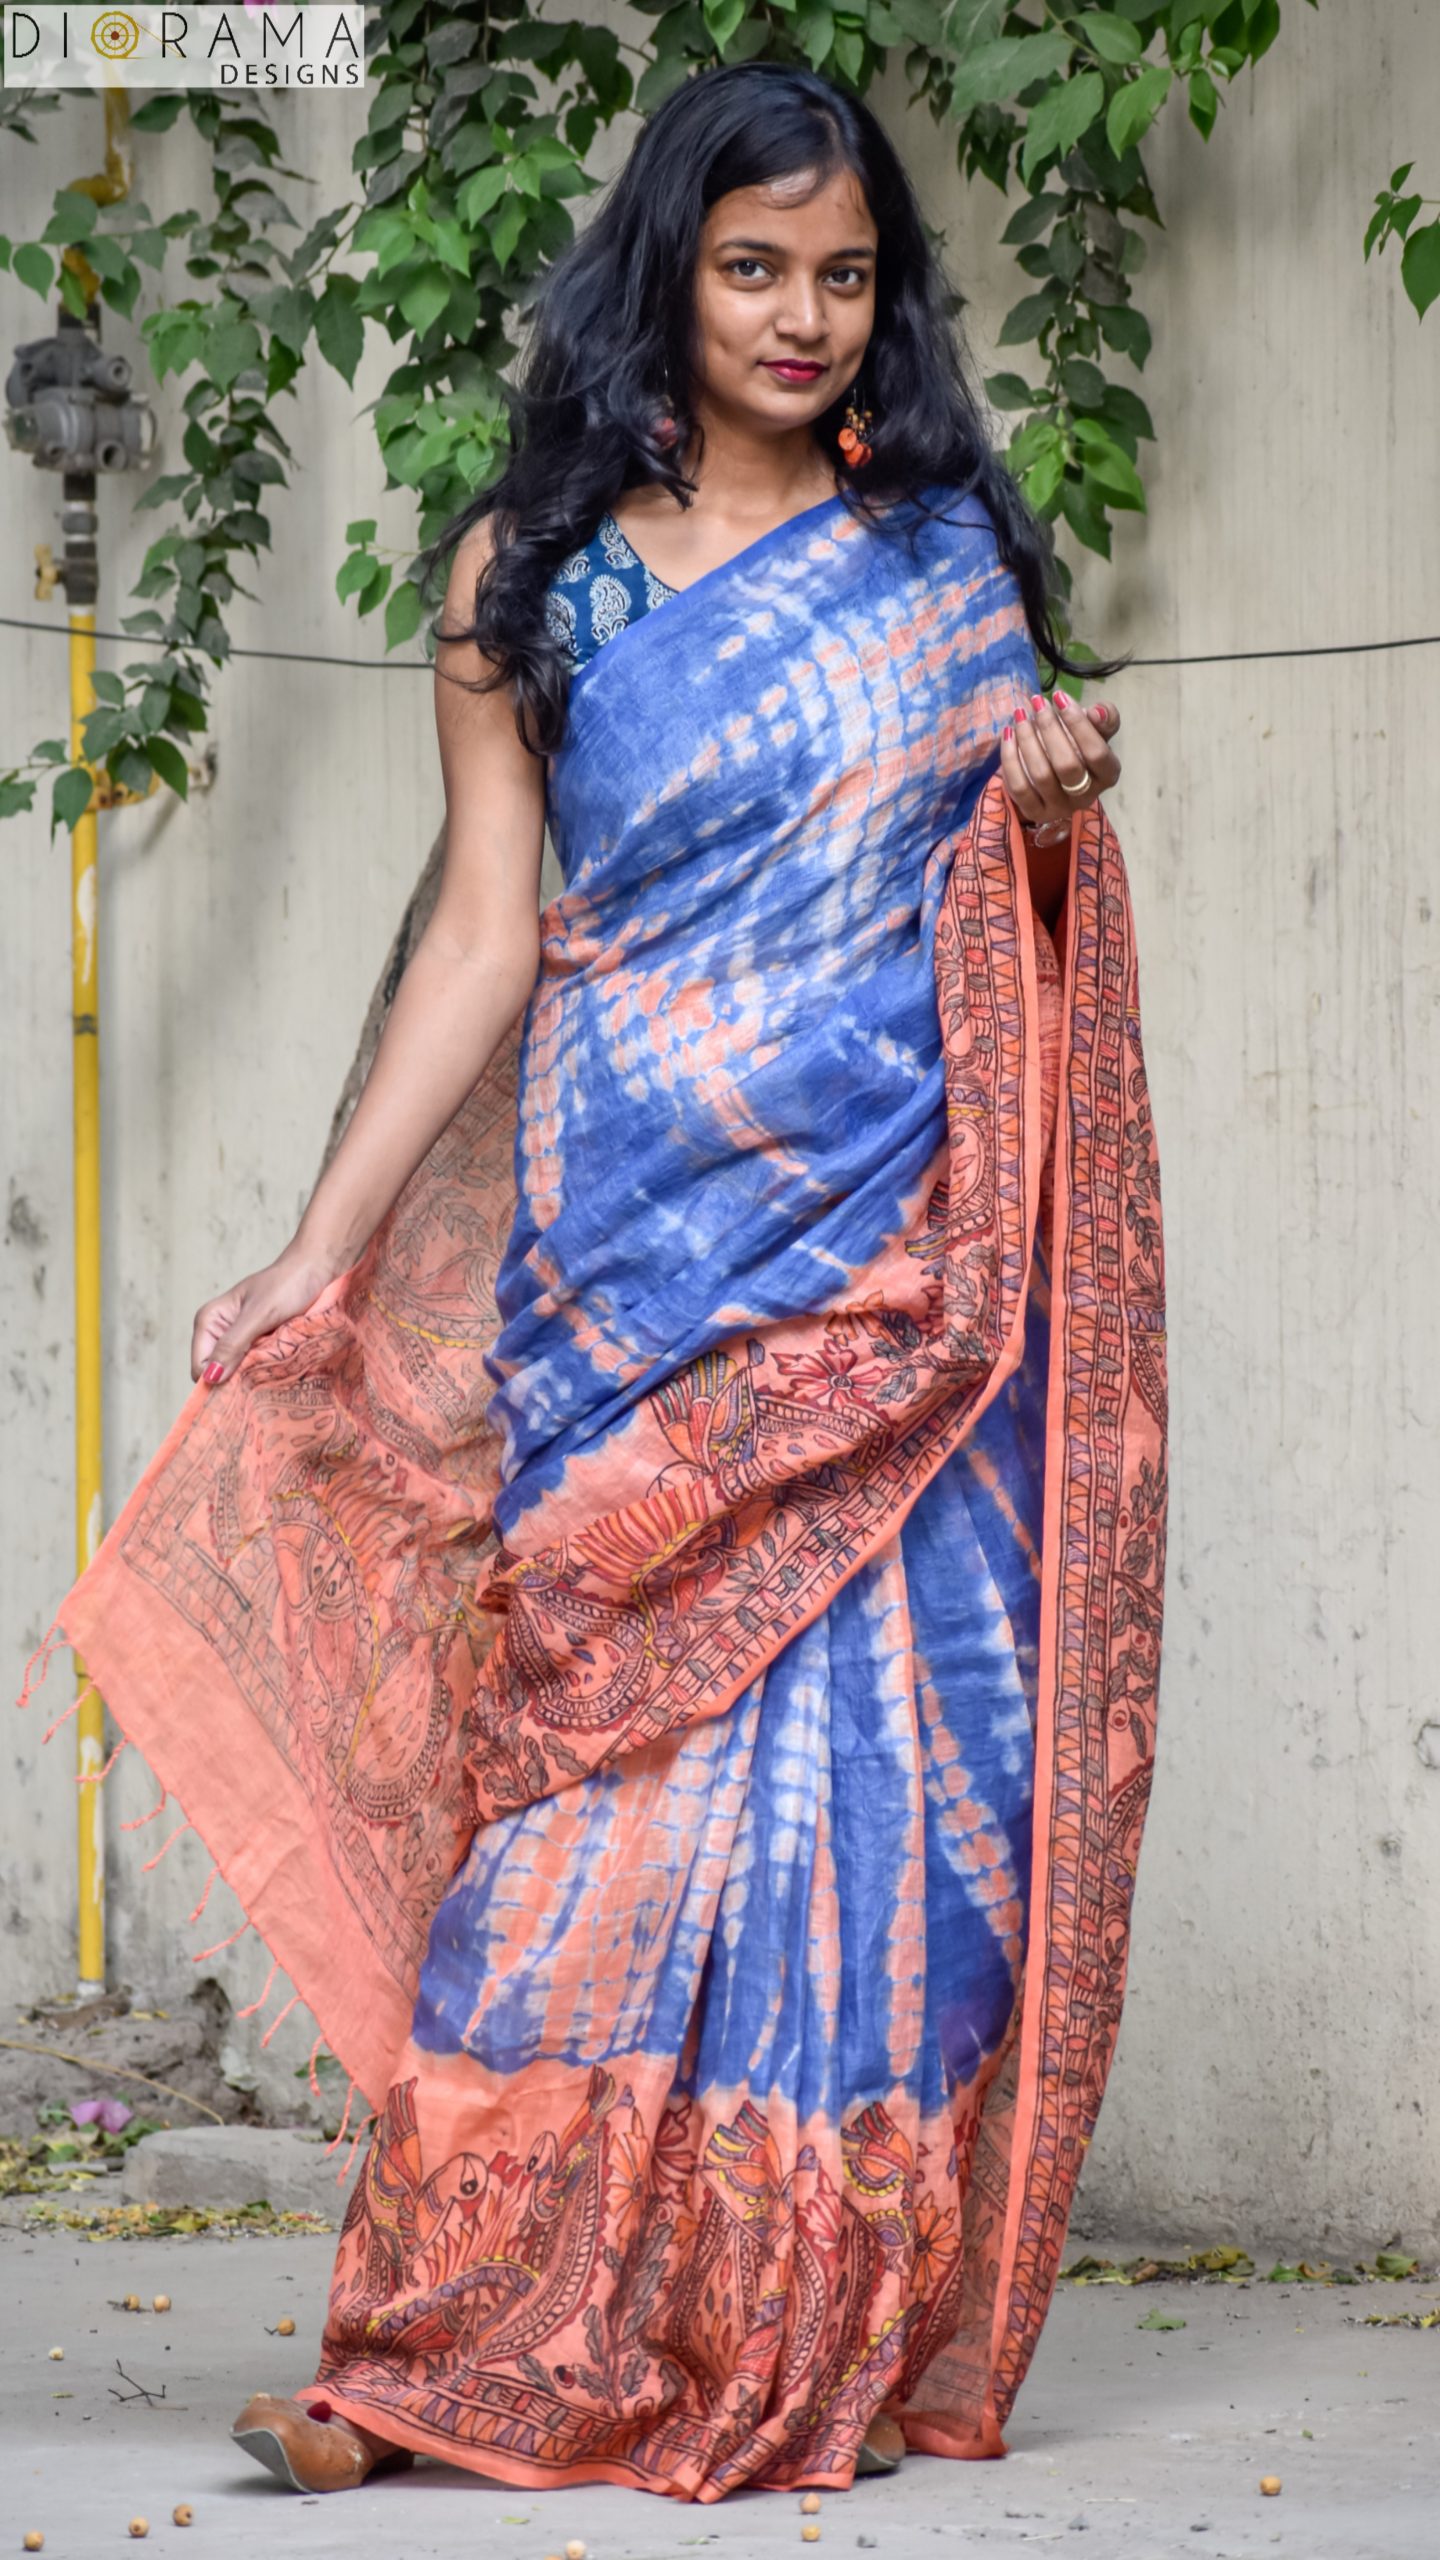 Shibori Bandhani Tie & Dye Madhubani Painting Linen Saree